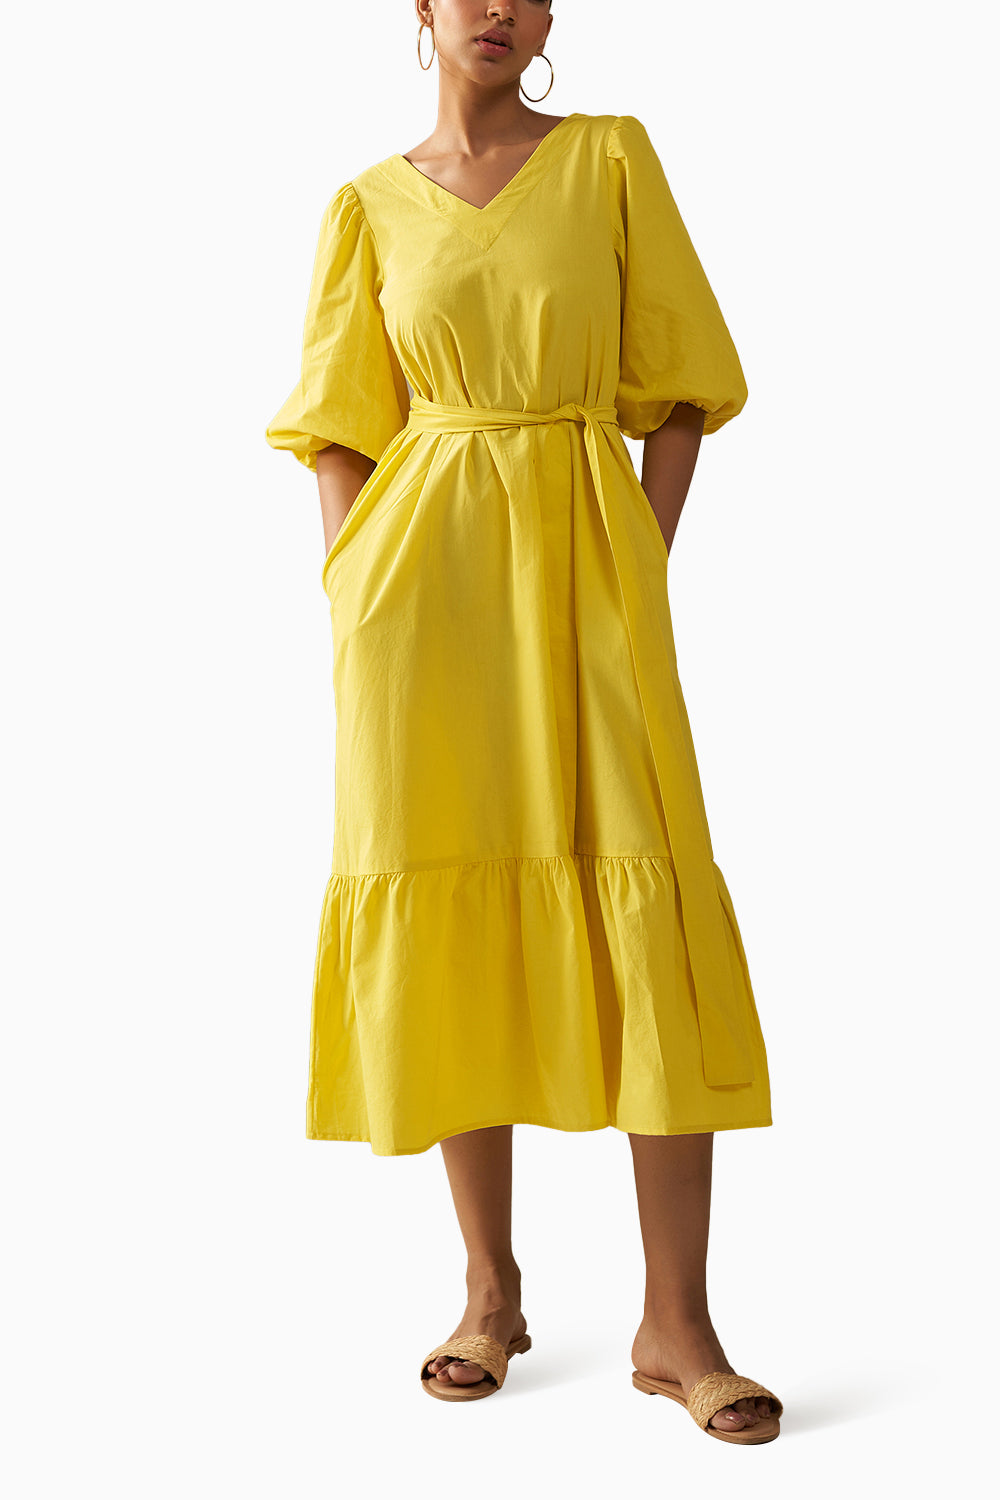 Lafayette Yellow Dress